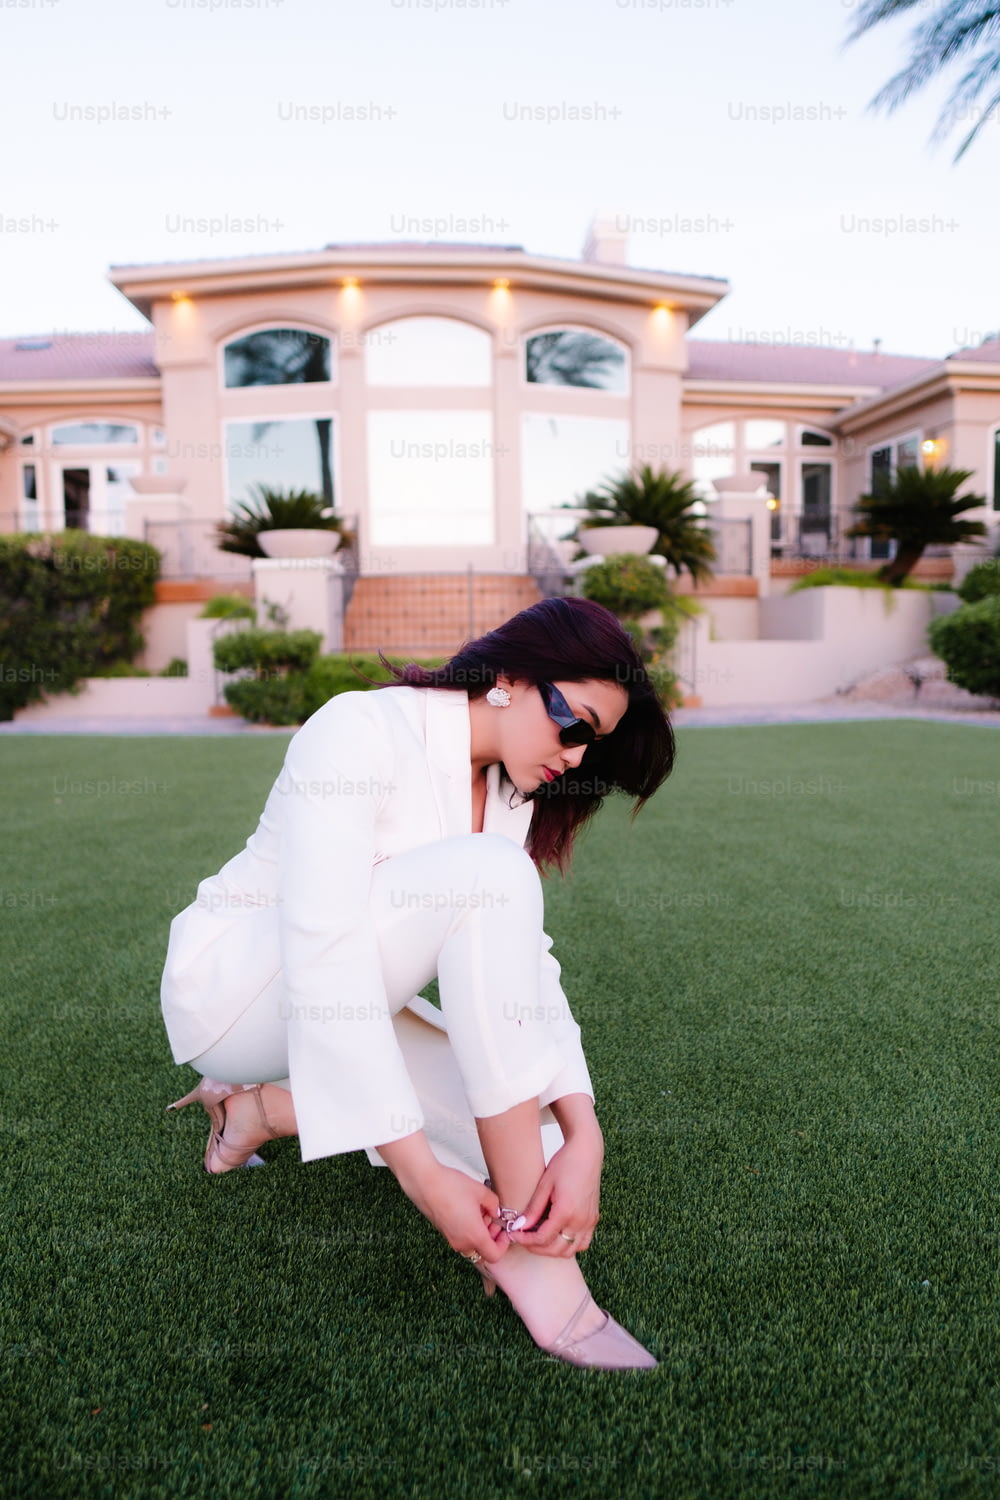 uma mulher em um terno branco ajoelhado na grama